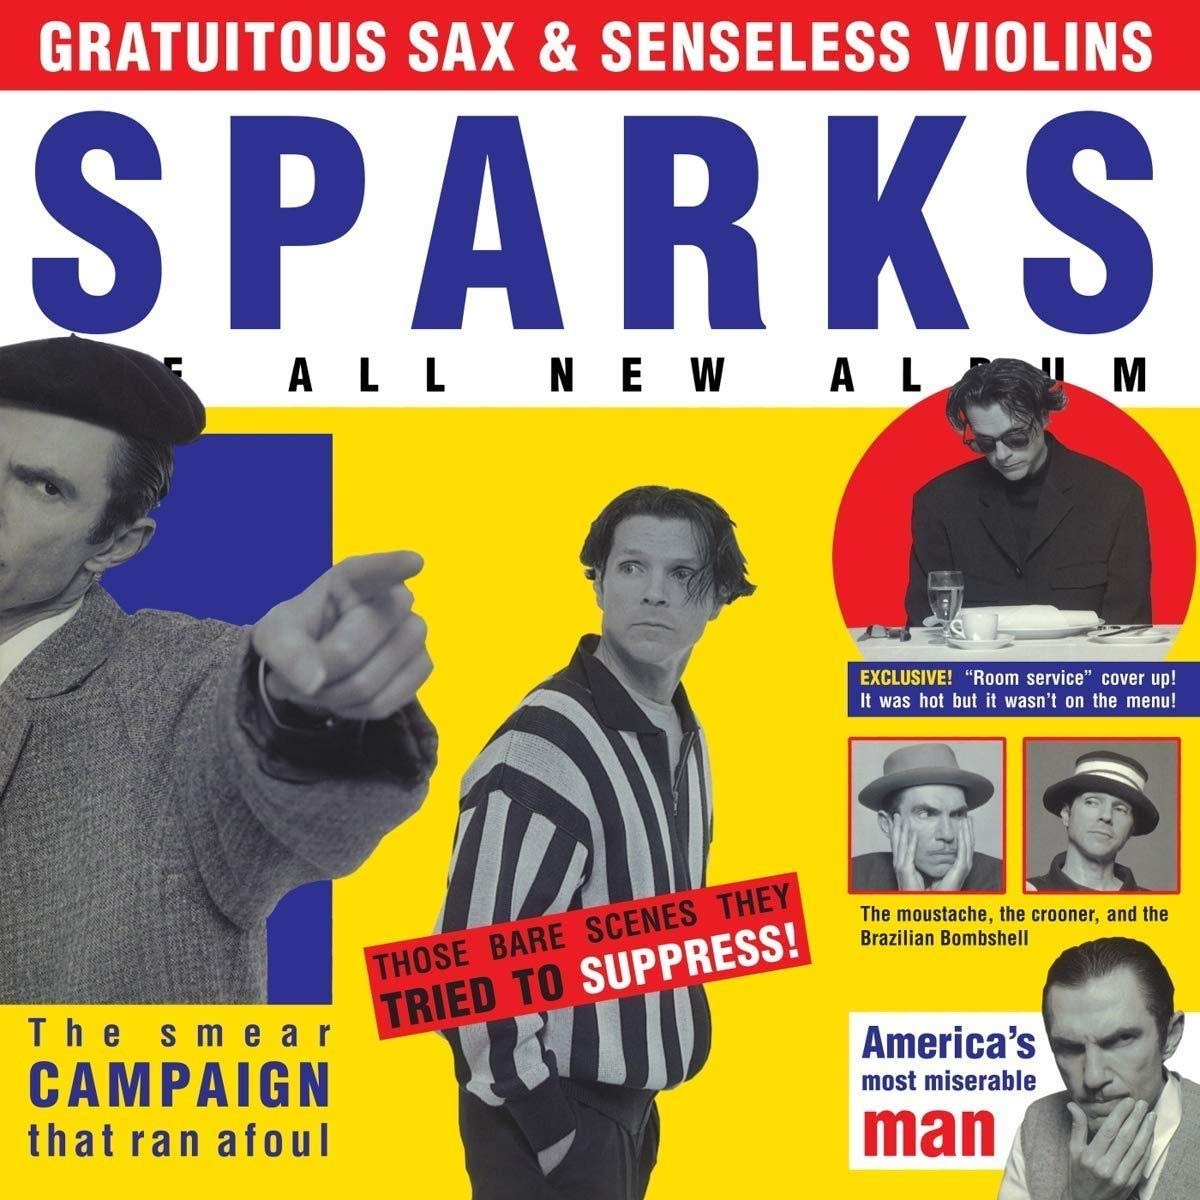 catalog 01 20 Sparks Gratious